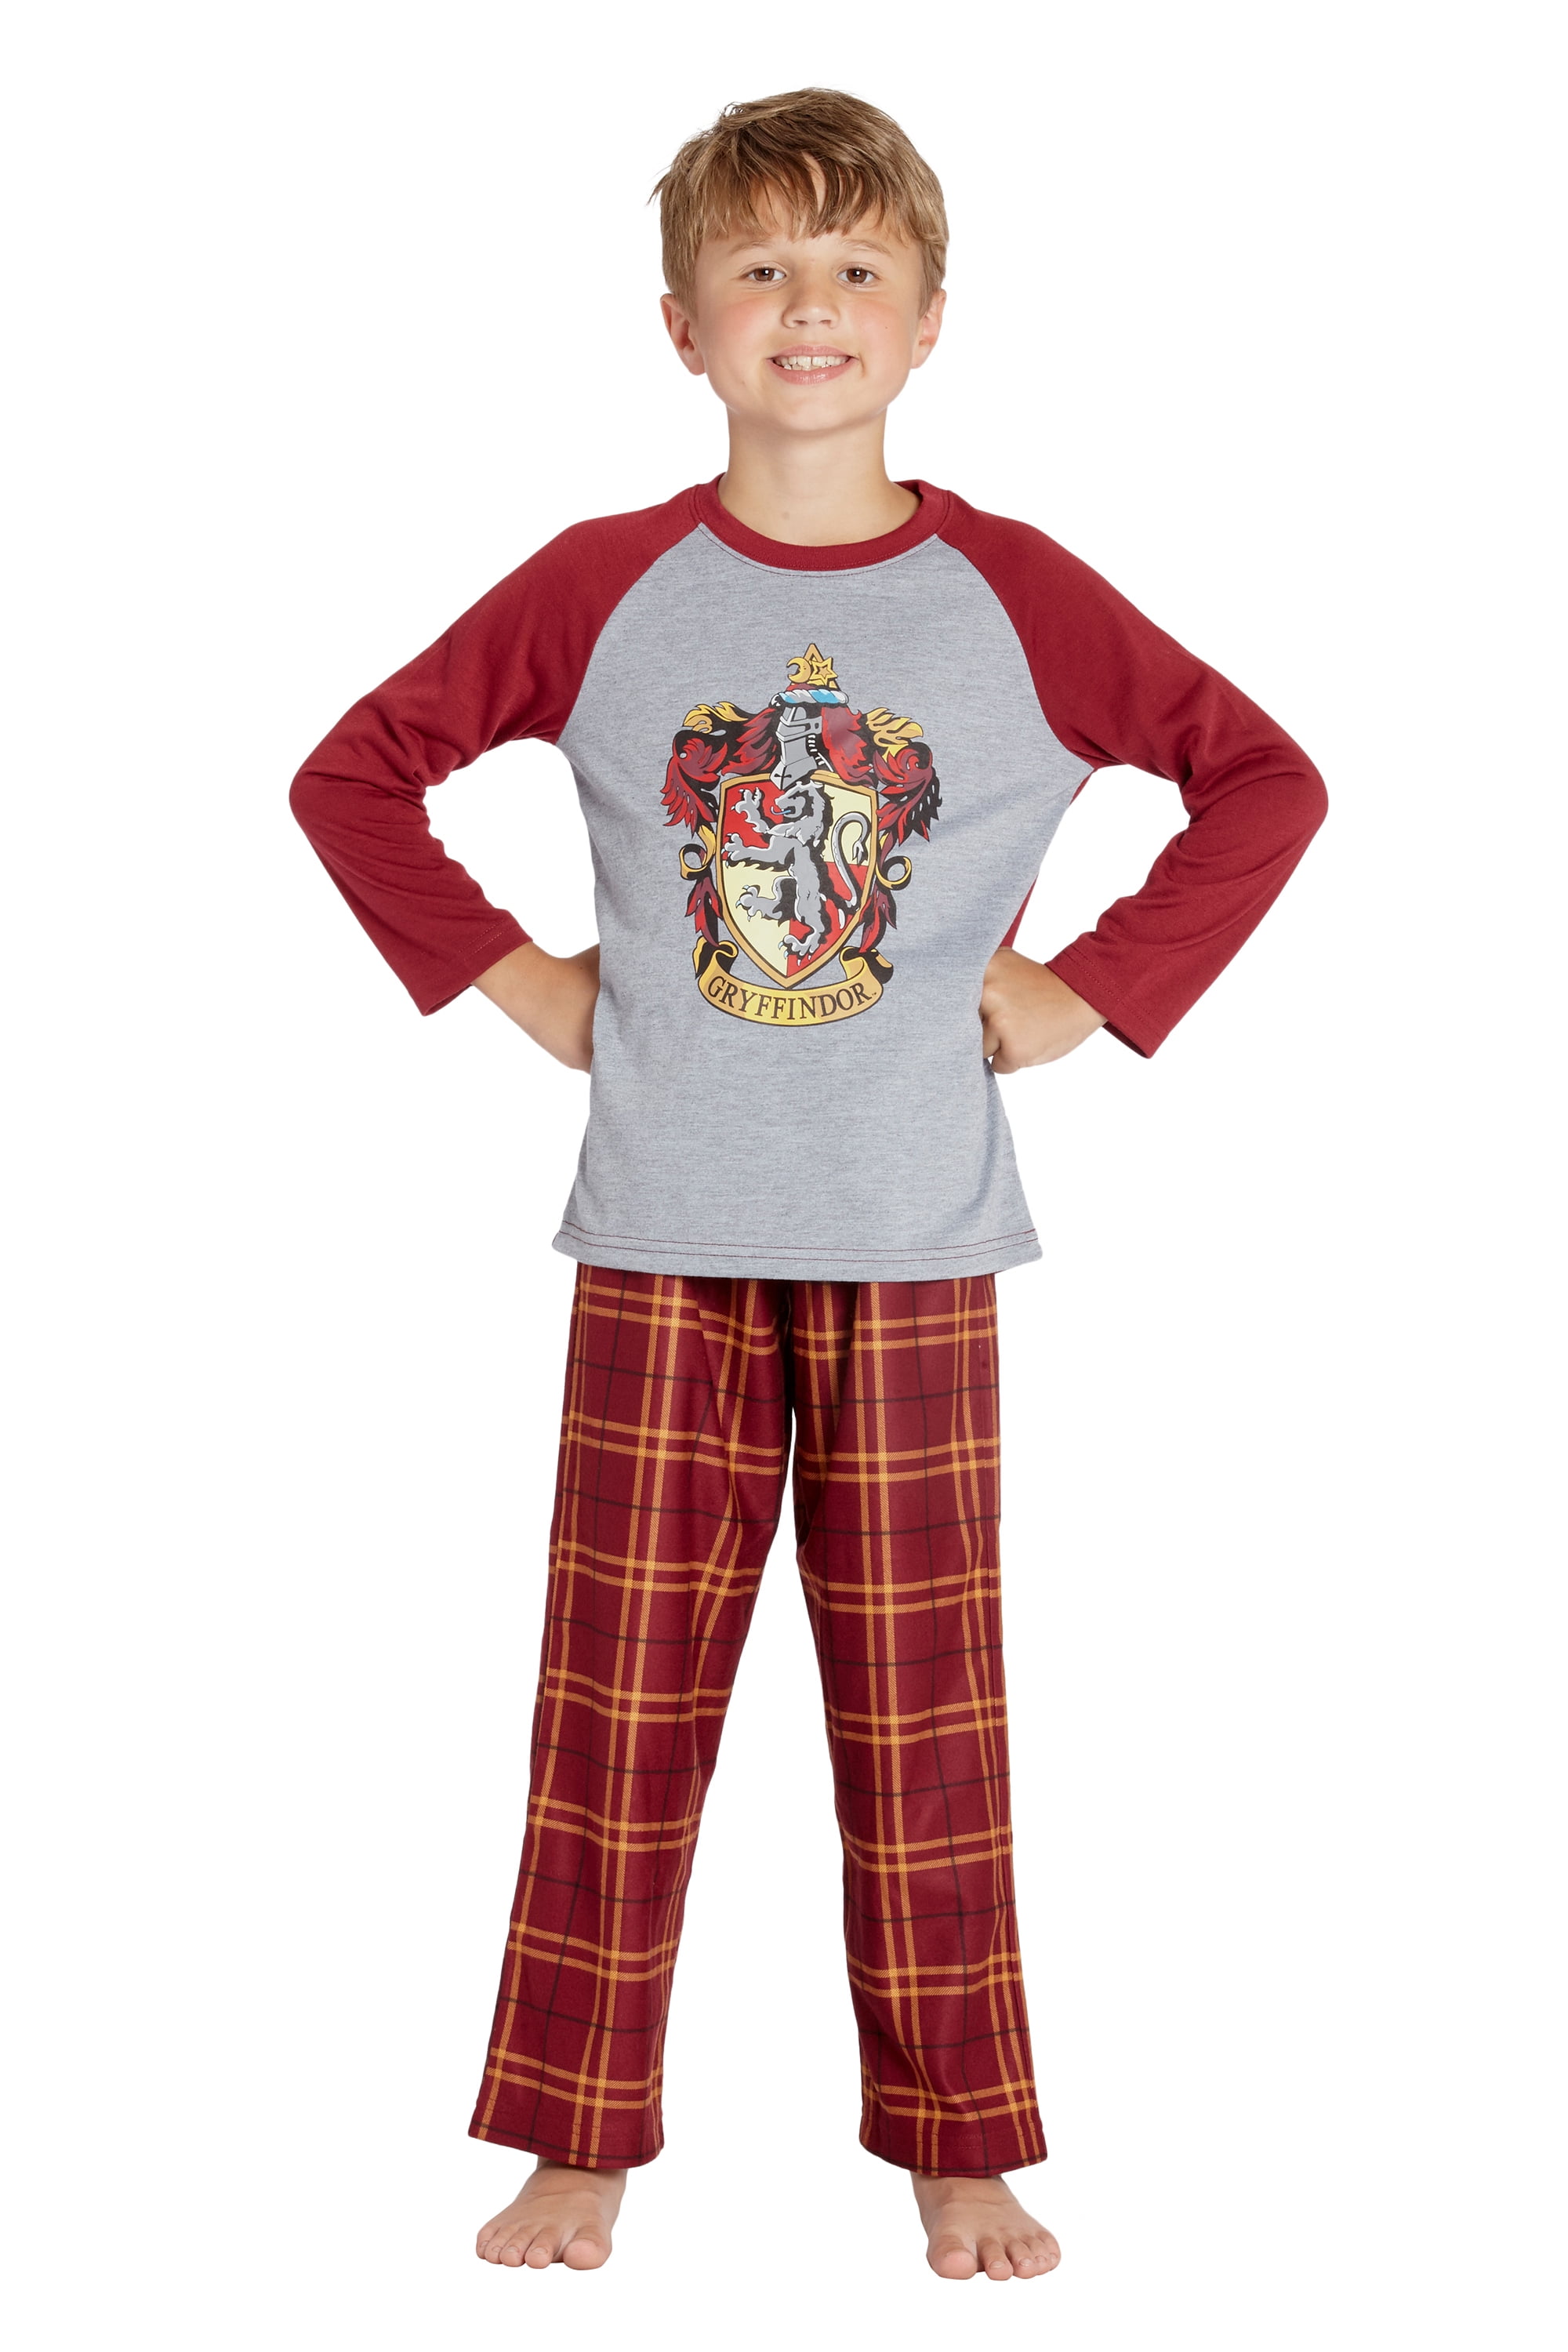 Harry Potter Pajamas Little And Big Boys' Raglan Shirt And Plaid Pants Set  -Gryffindor, Ravenclaw, Slytherin, Hufflepuff 